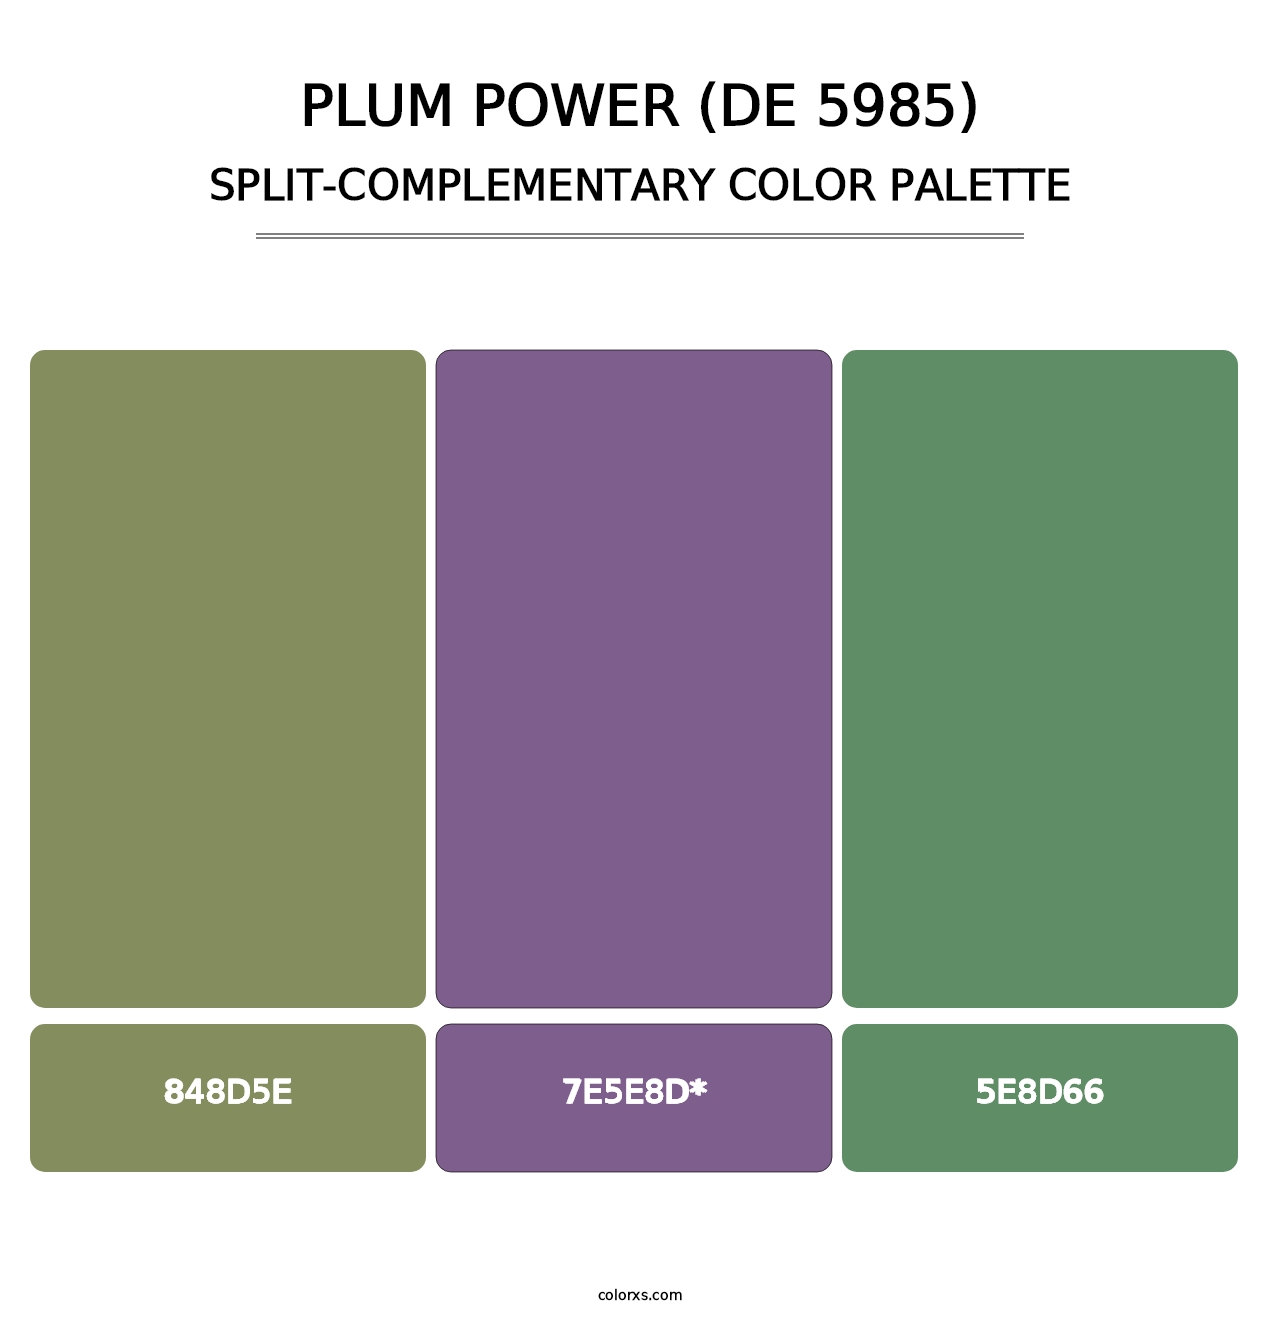 Plum Power (DE 5985) - Split-Complementary Color Palette